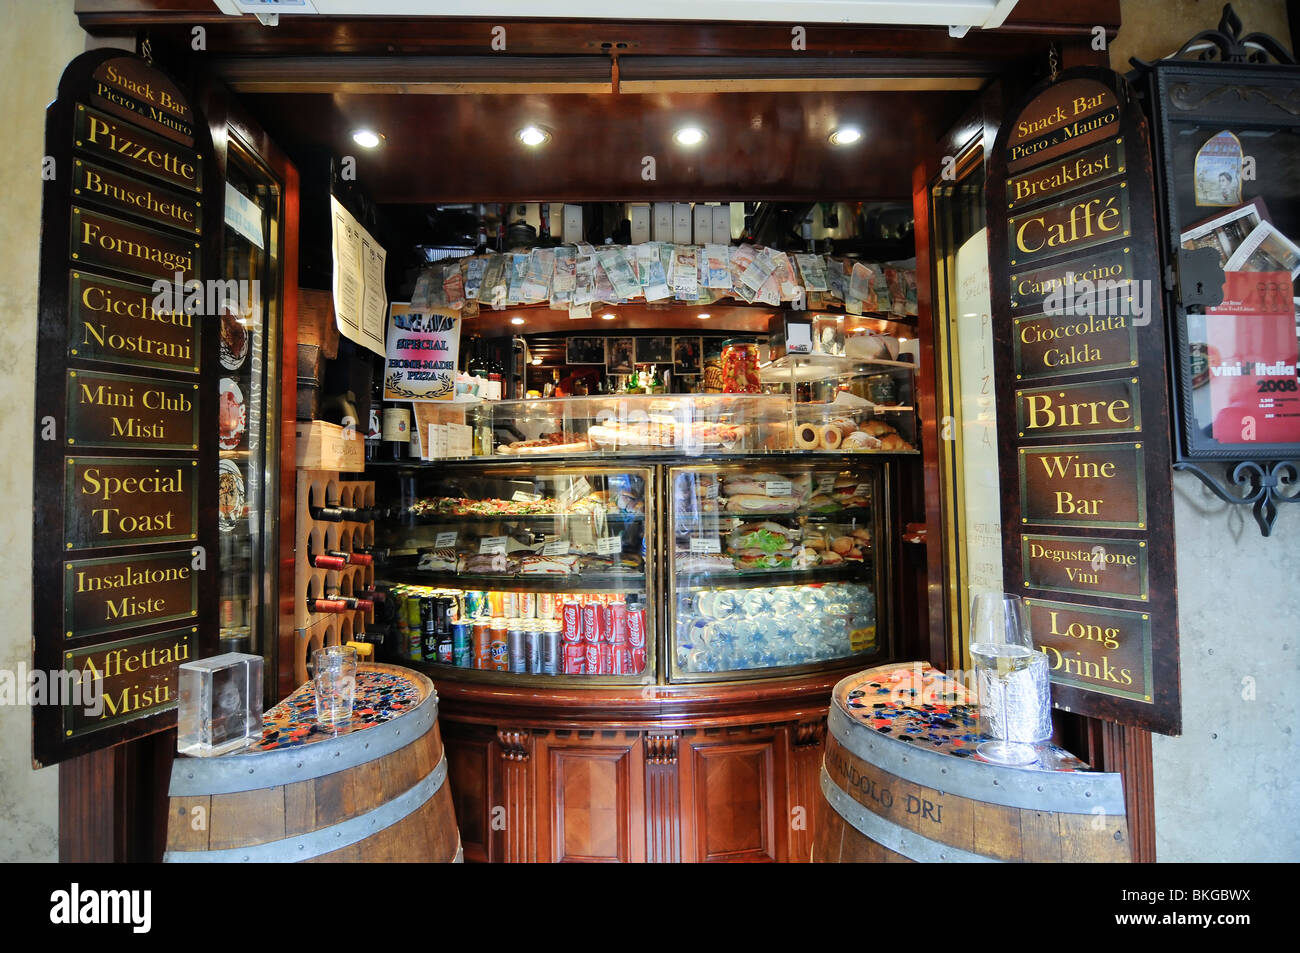 Snack bar in Venice, Italy Stock Photo